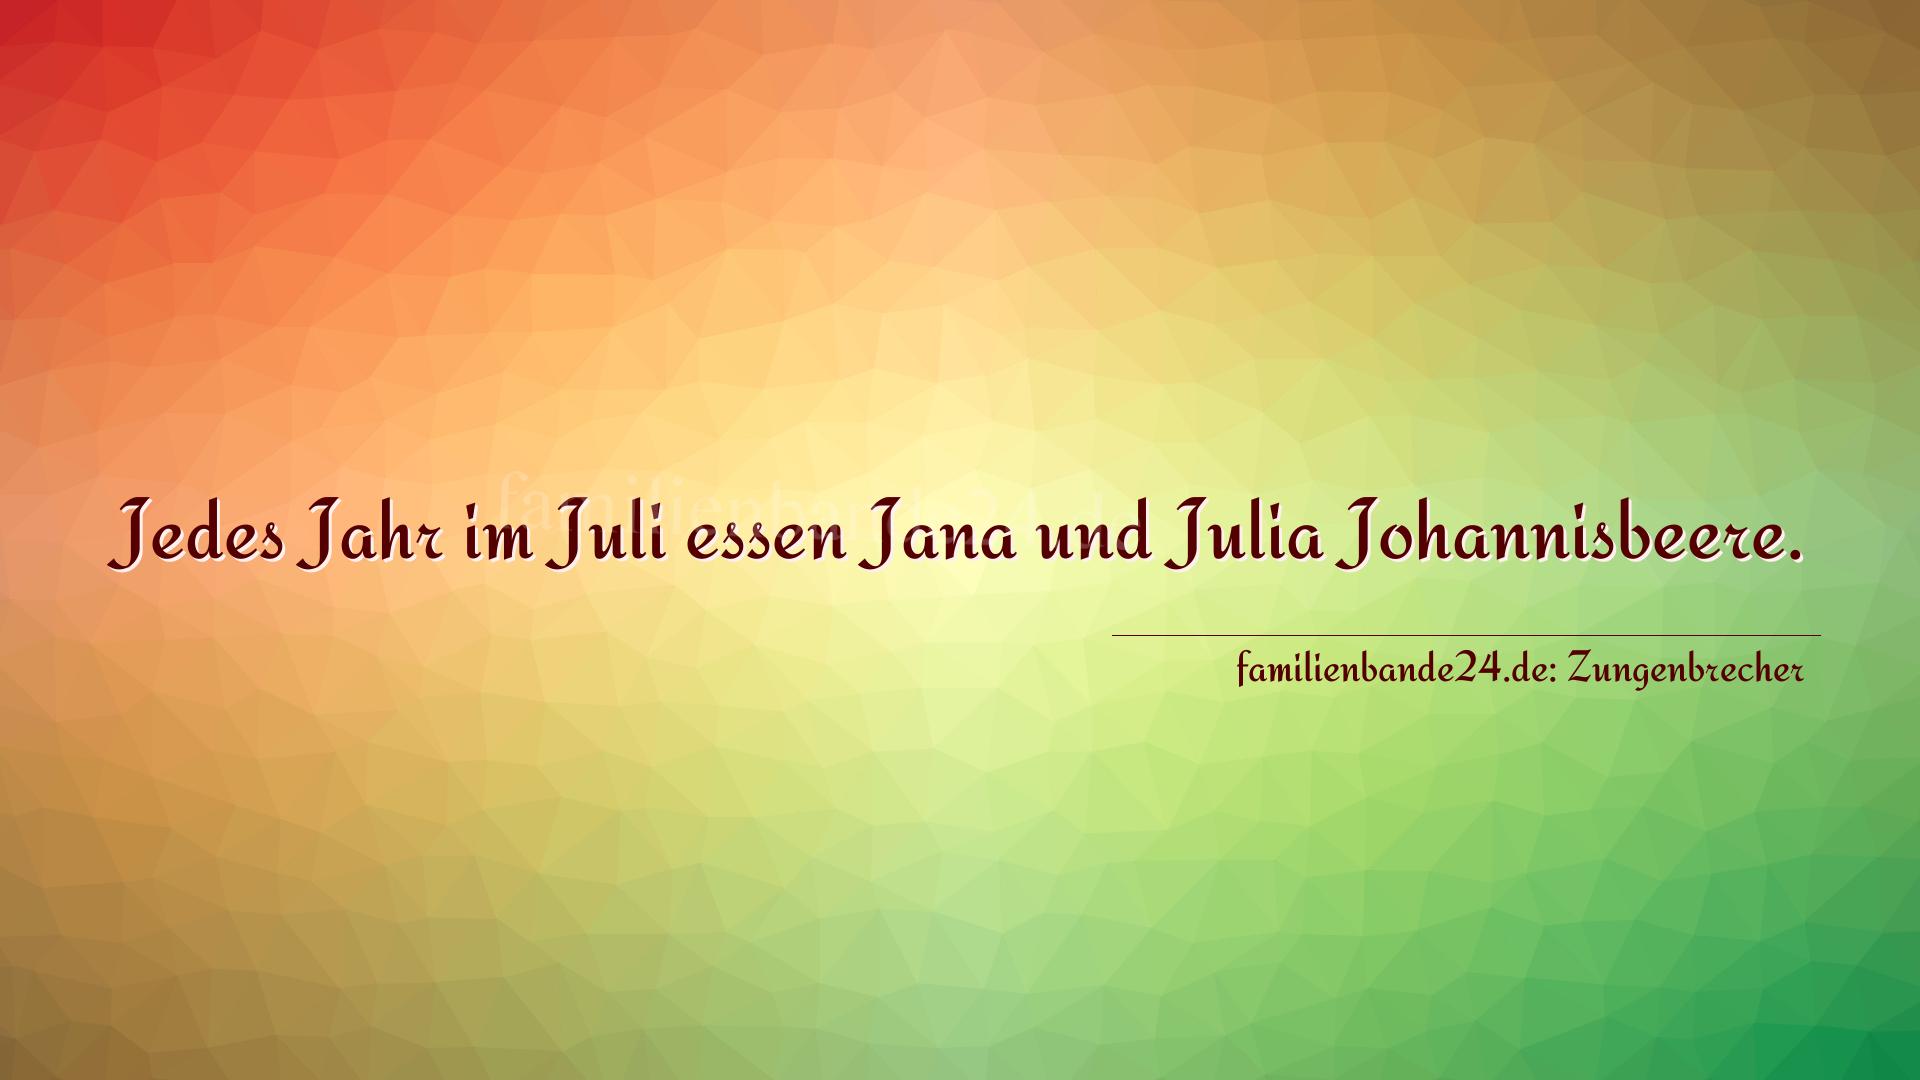 Zungenbrecher Nummer 759: Jedes Jahr im Juli essen Jana und Julia Johannisbeere.